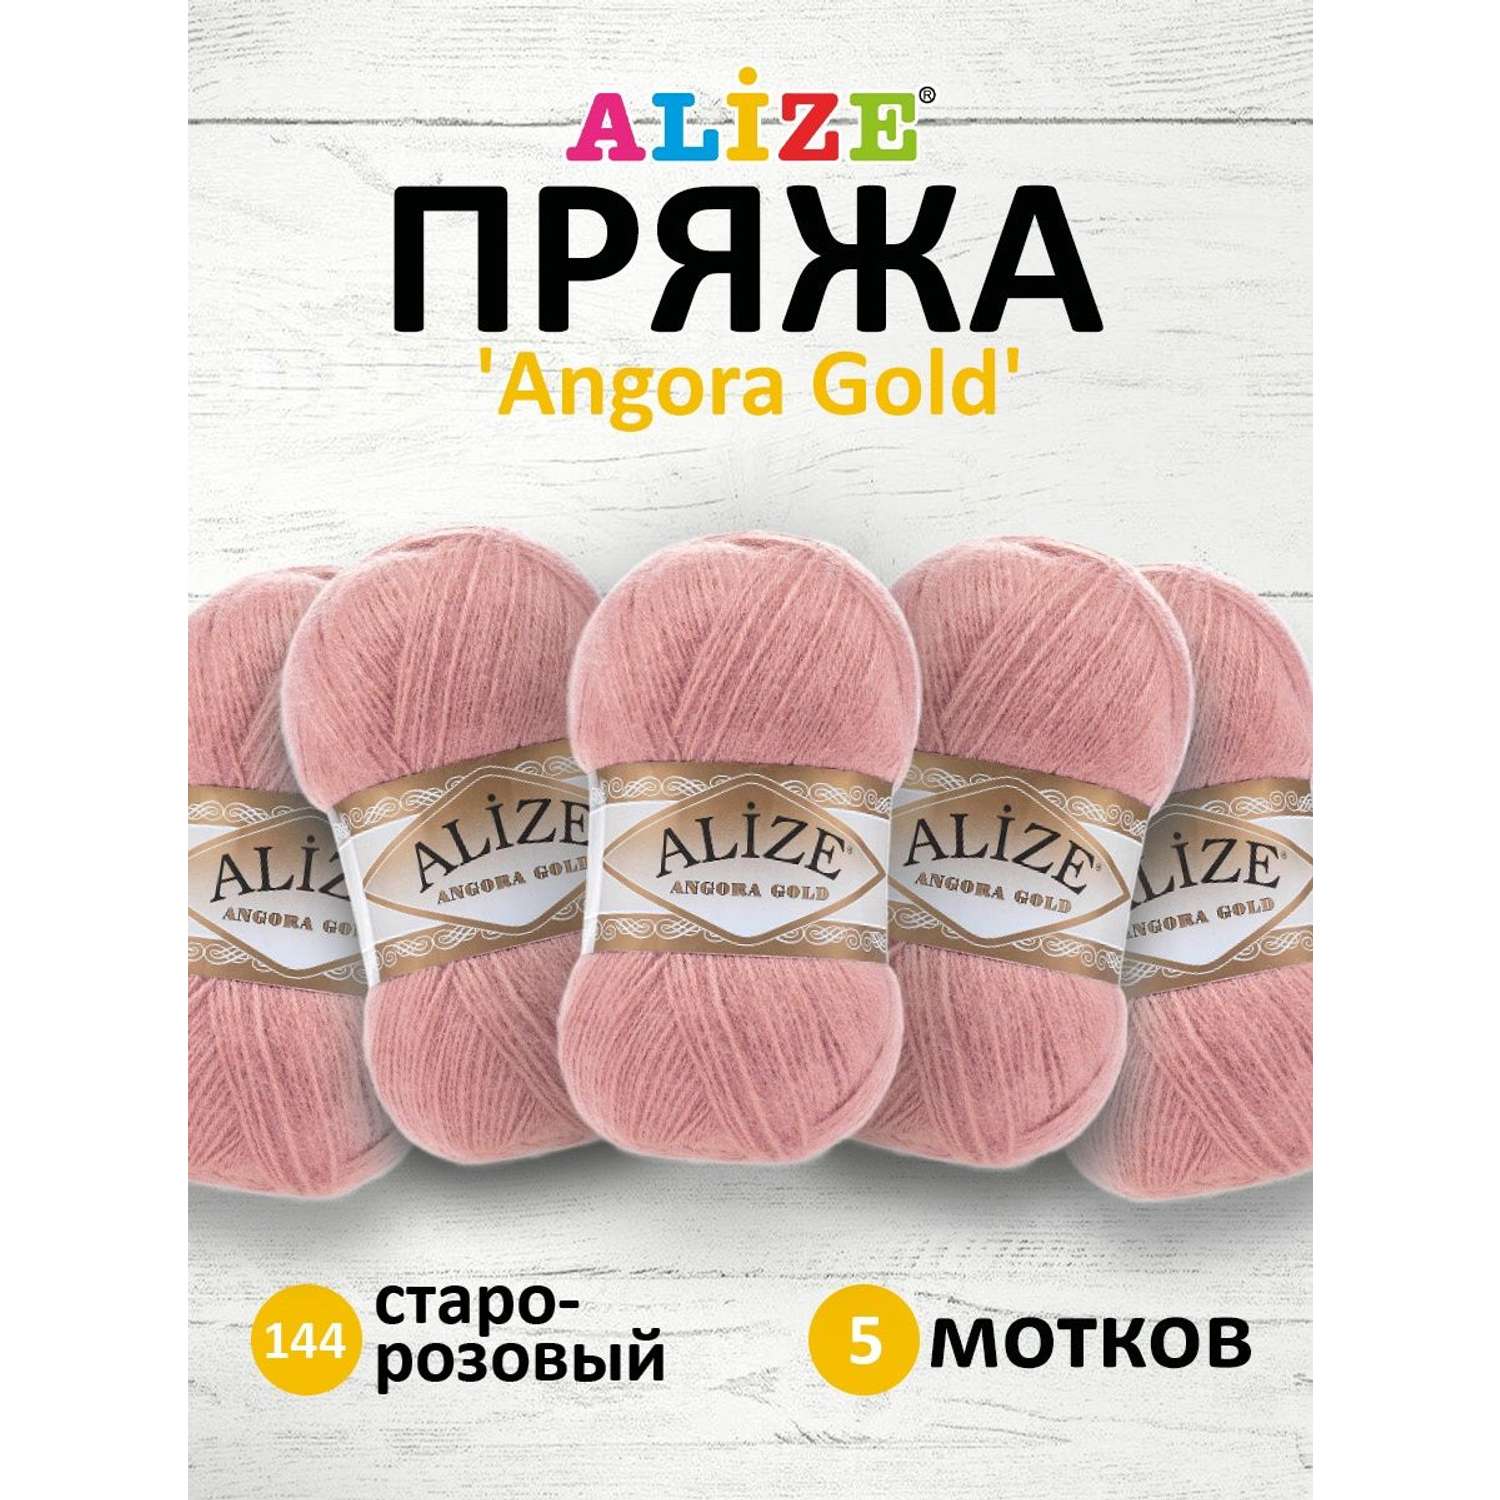 Пряжа Alize мягкая теплая для шарфов кардиганов Angora Gold 100 гр 550 м 5 мотков 144 старо-розовый - фото 1